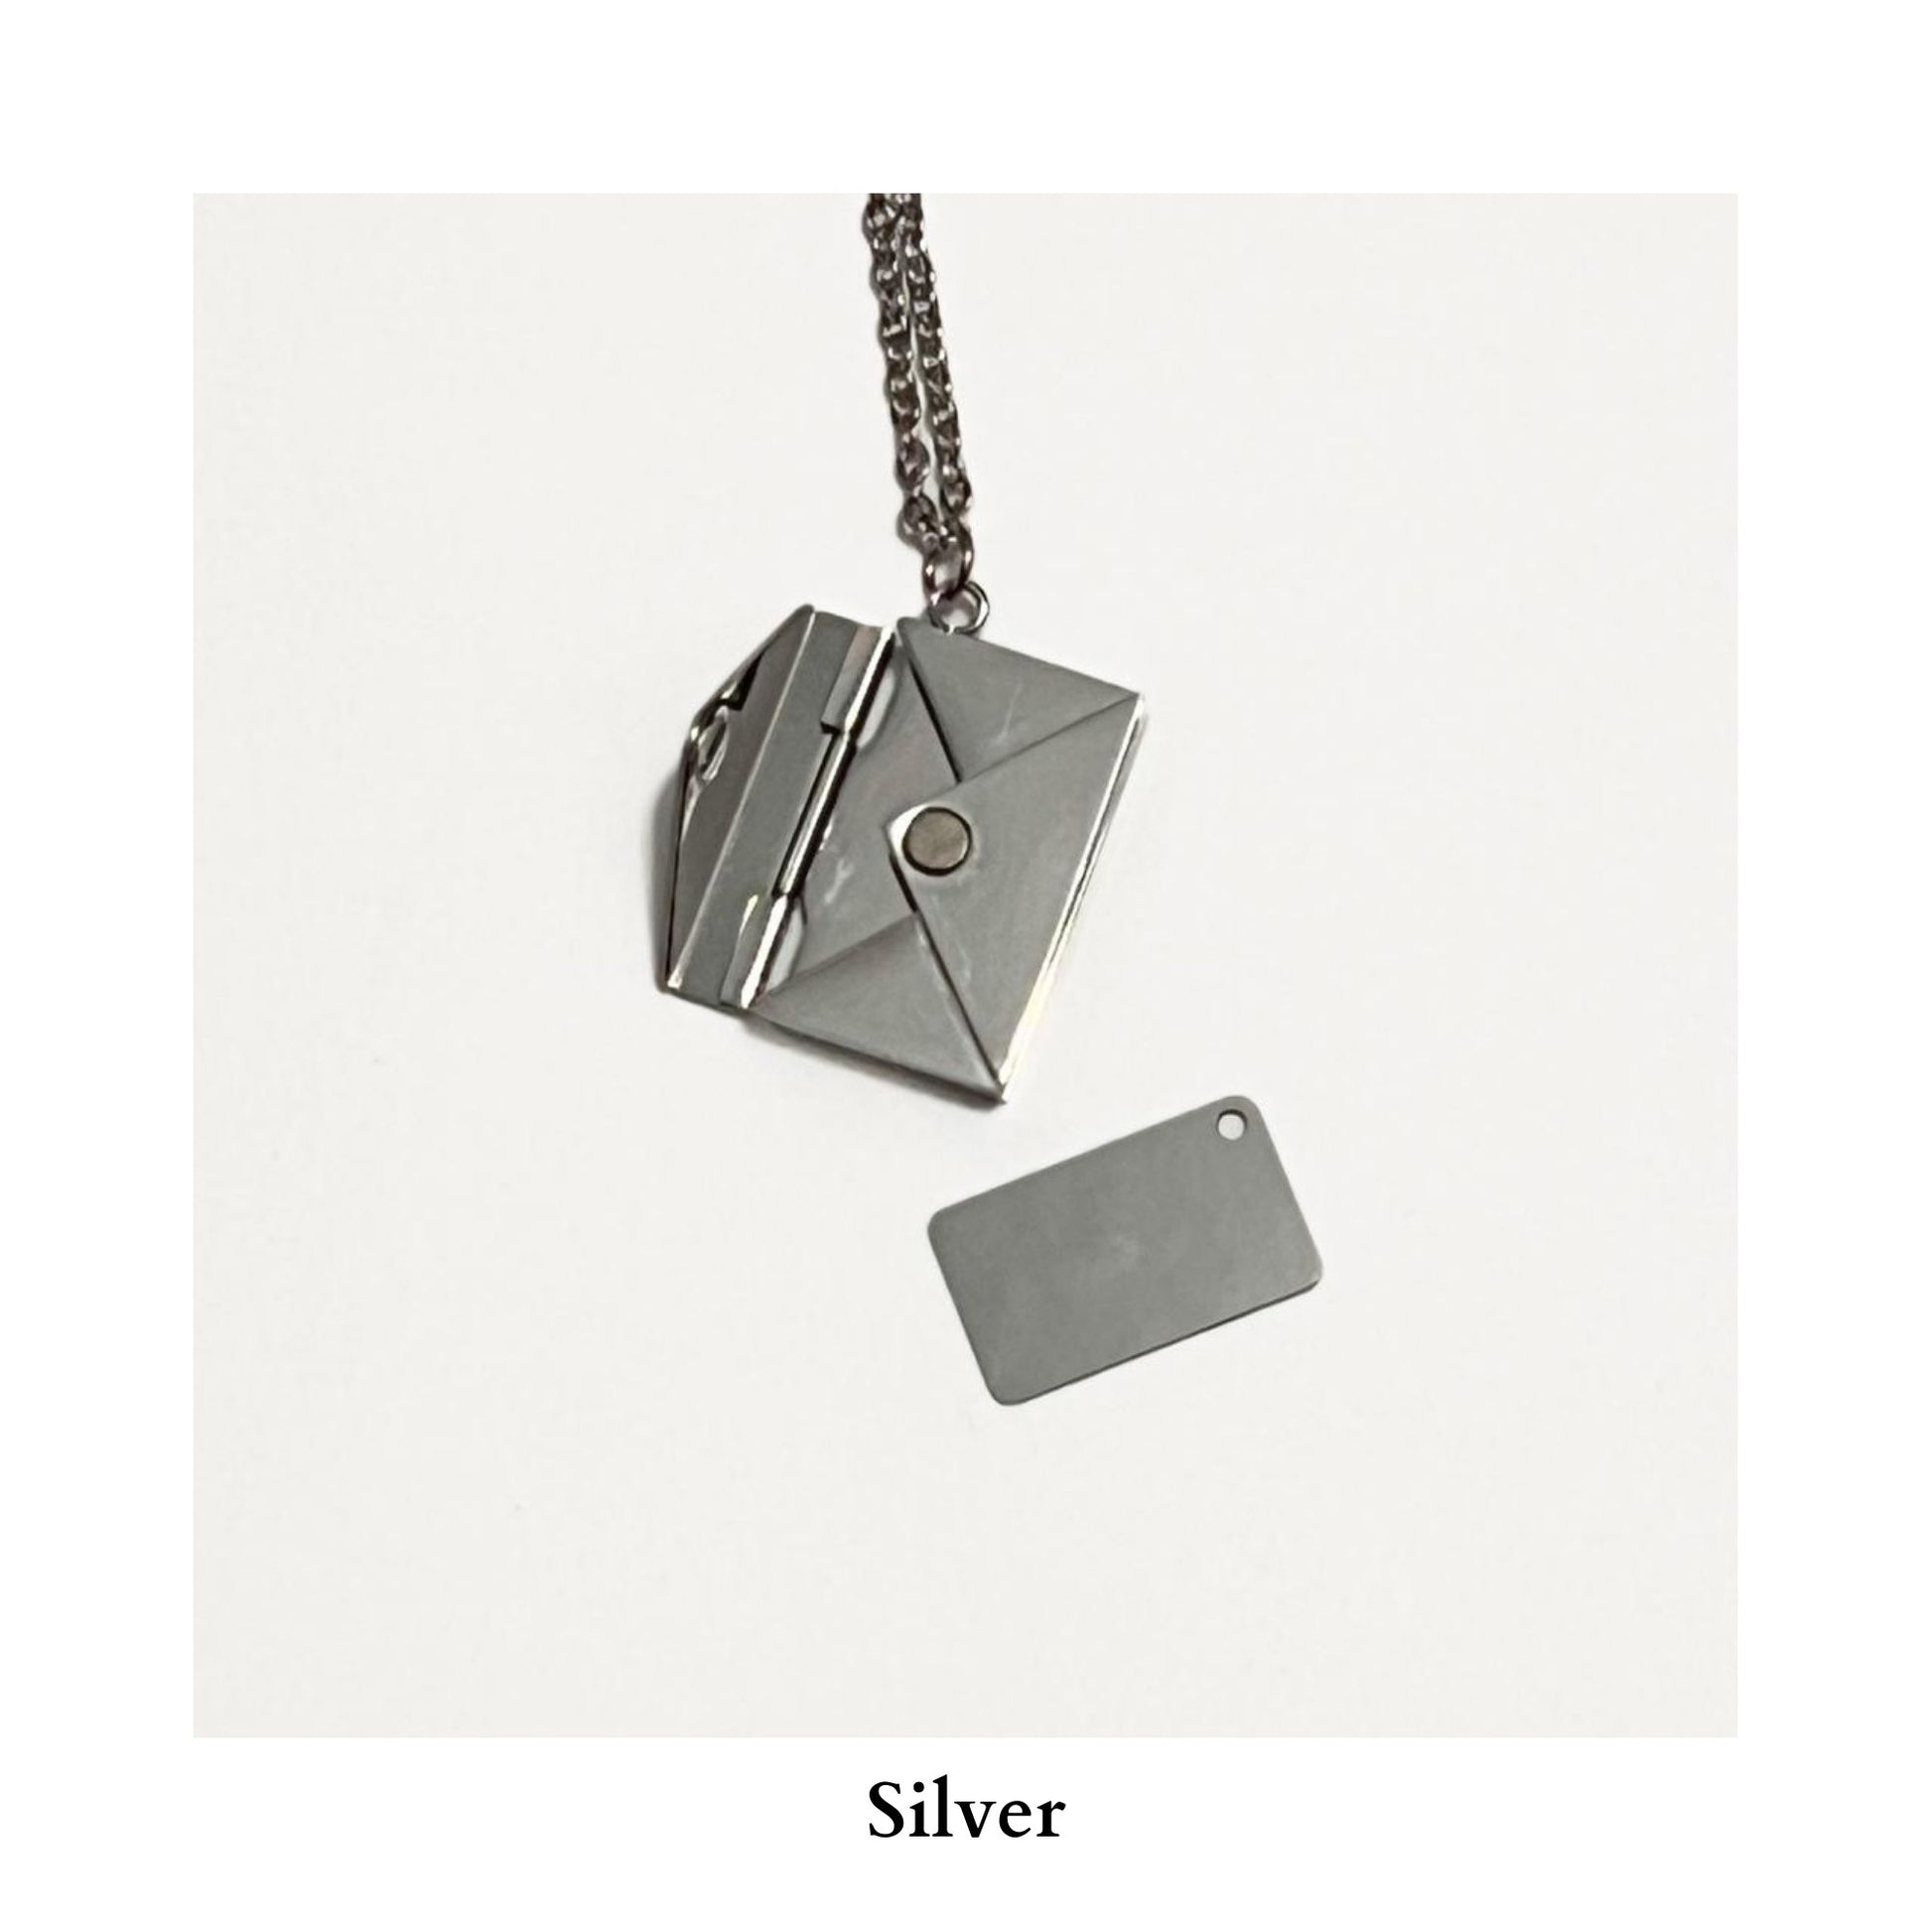 silver hidden pendant necklace